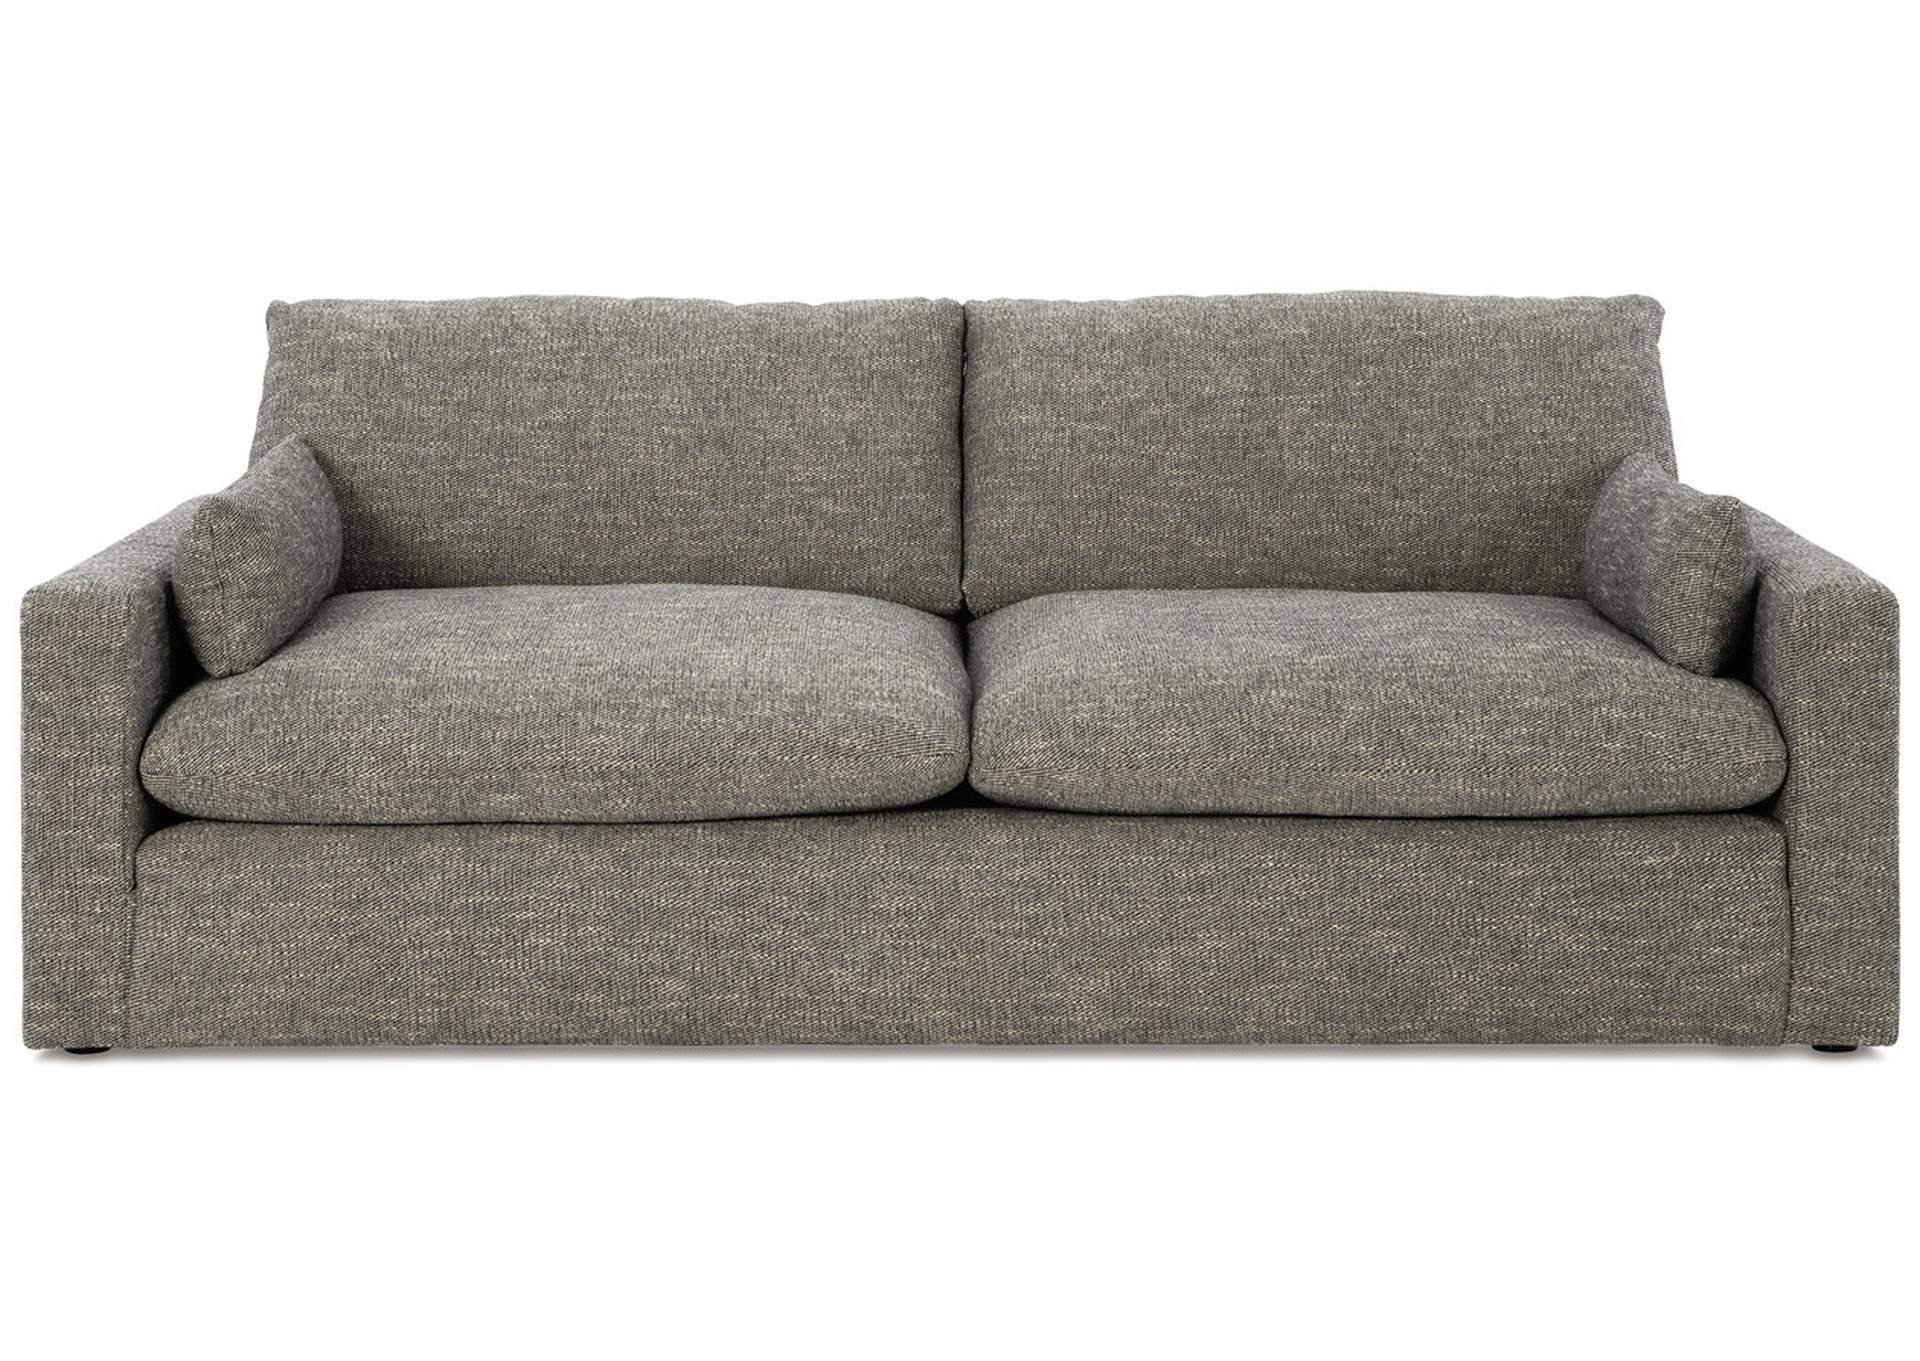 Dramatic Sofa,Benchcraft